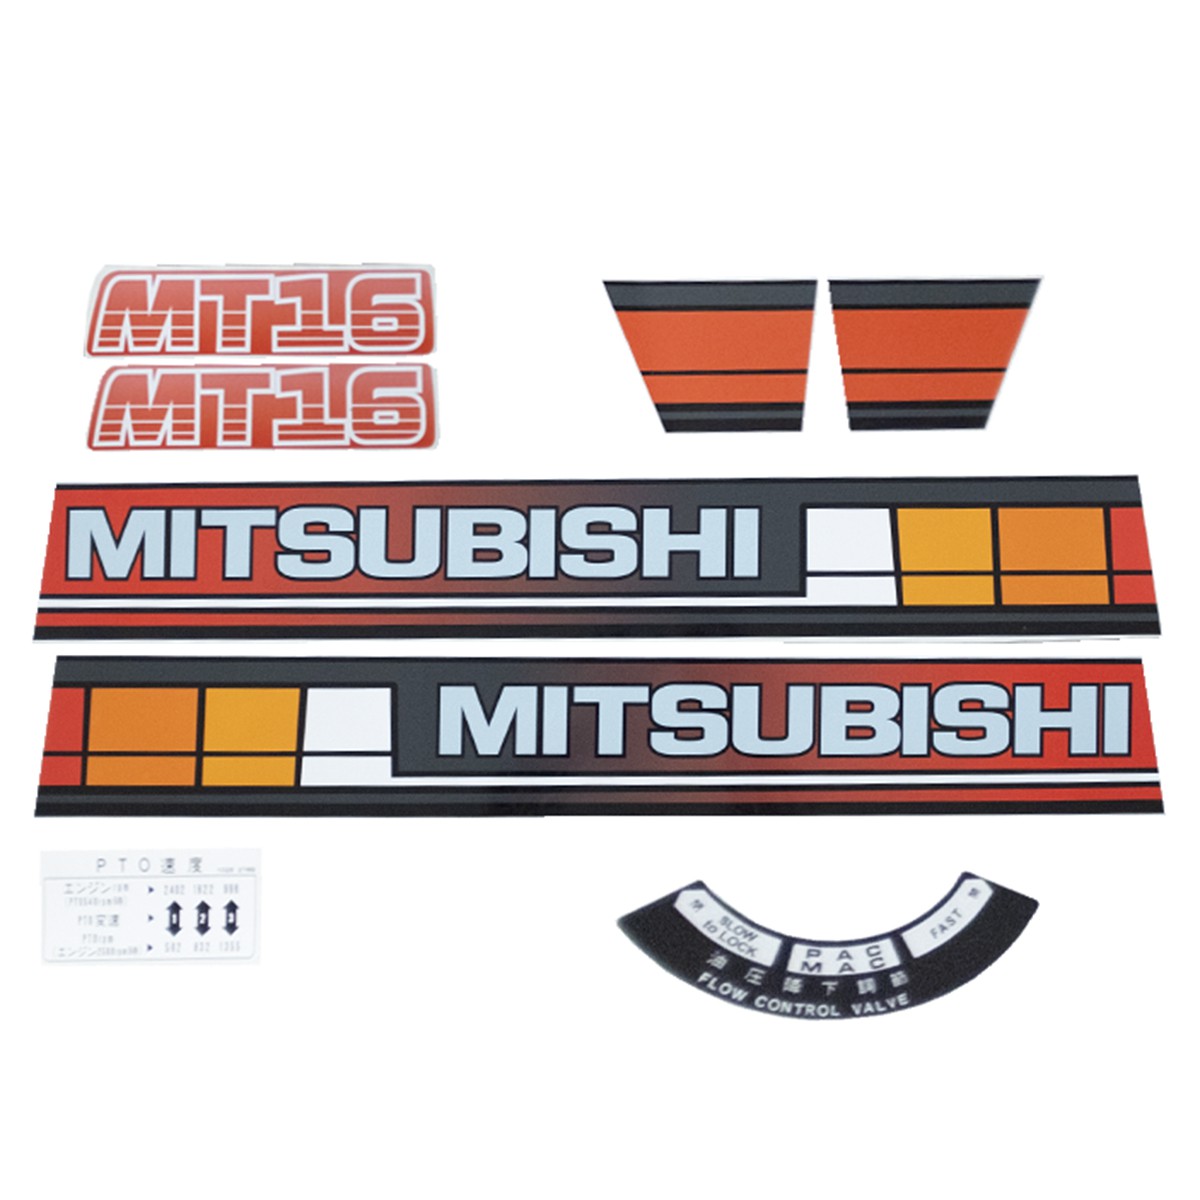 Mitsubishi MT16 stickers